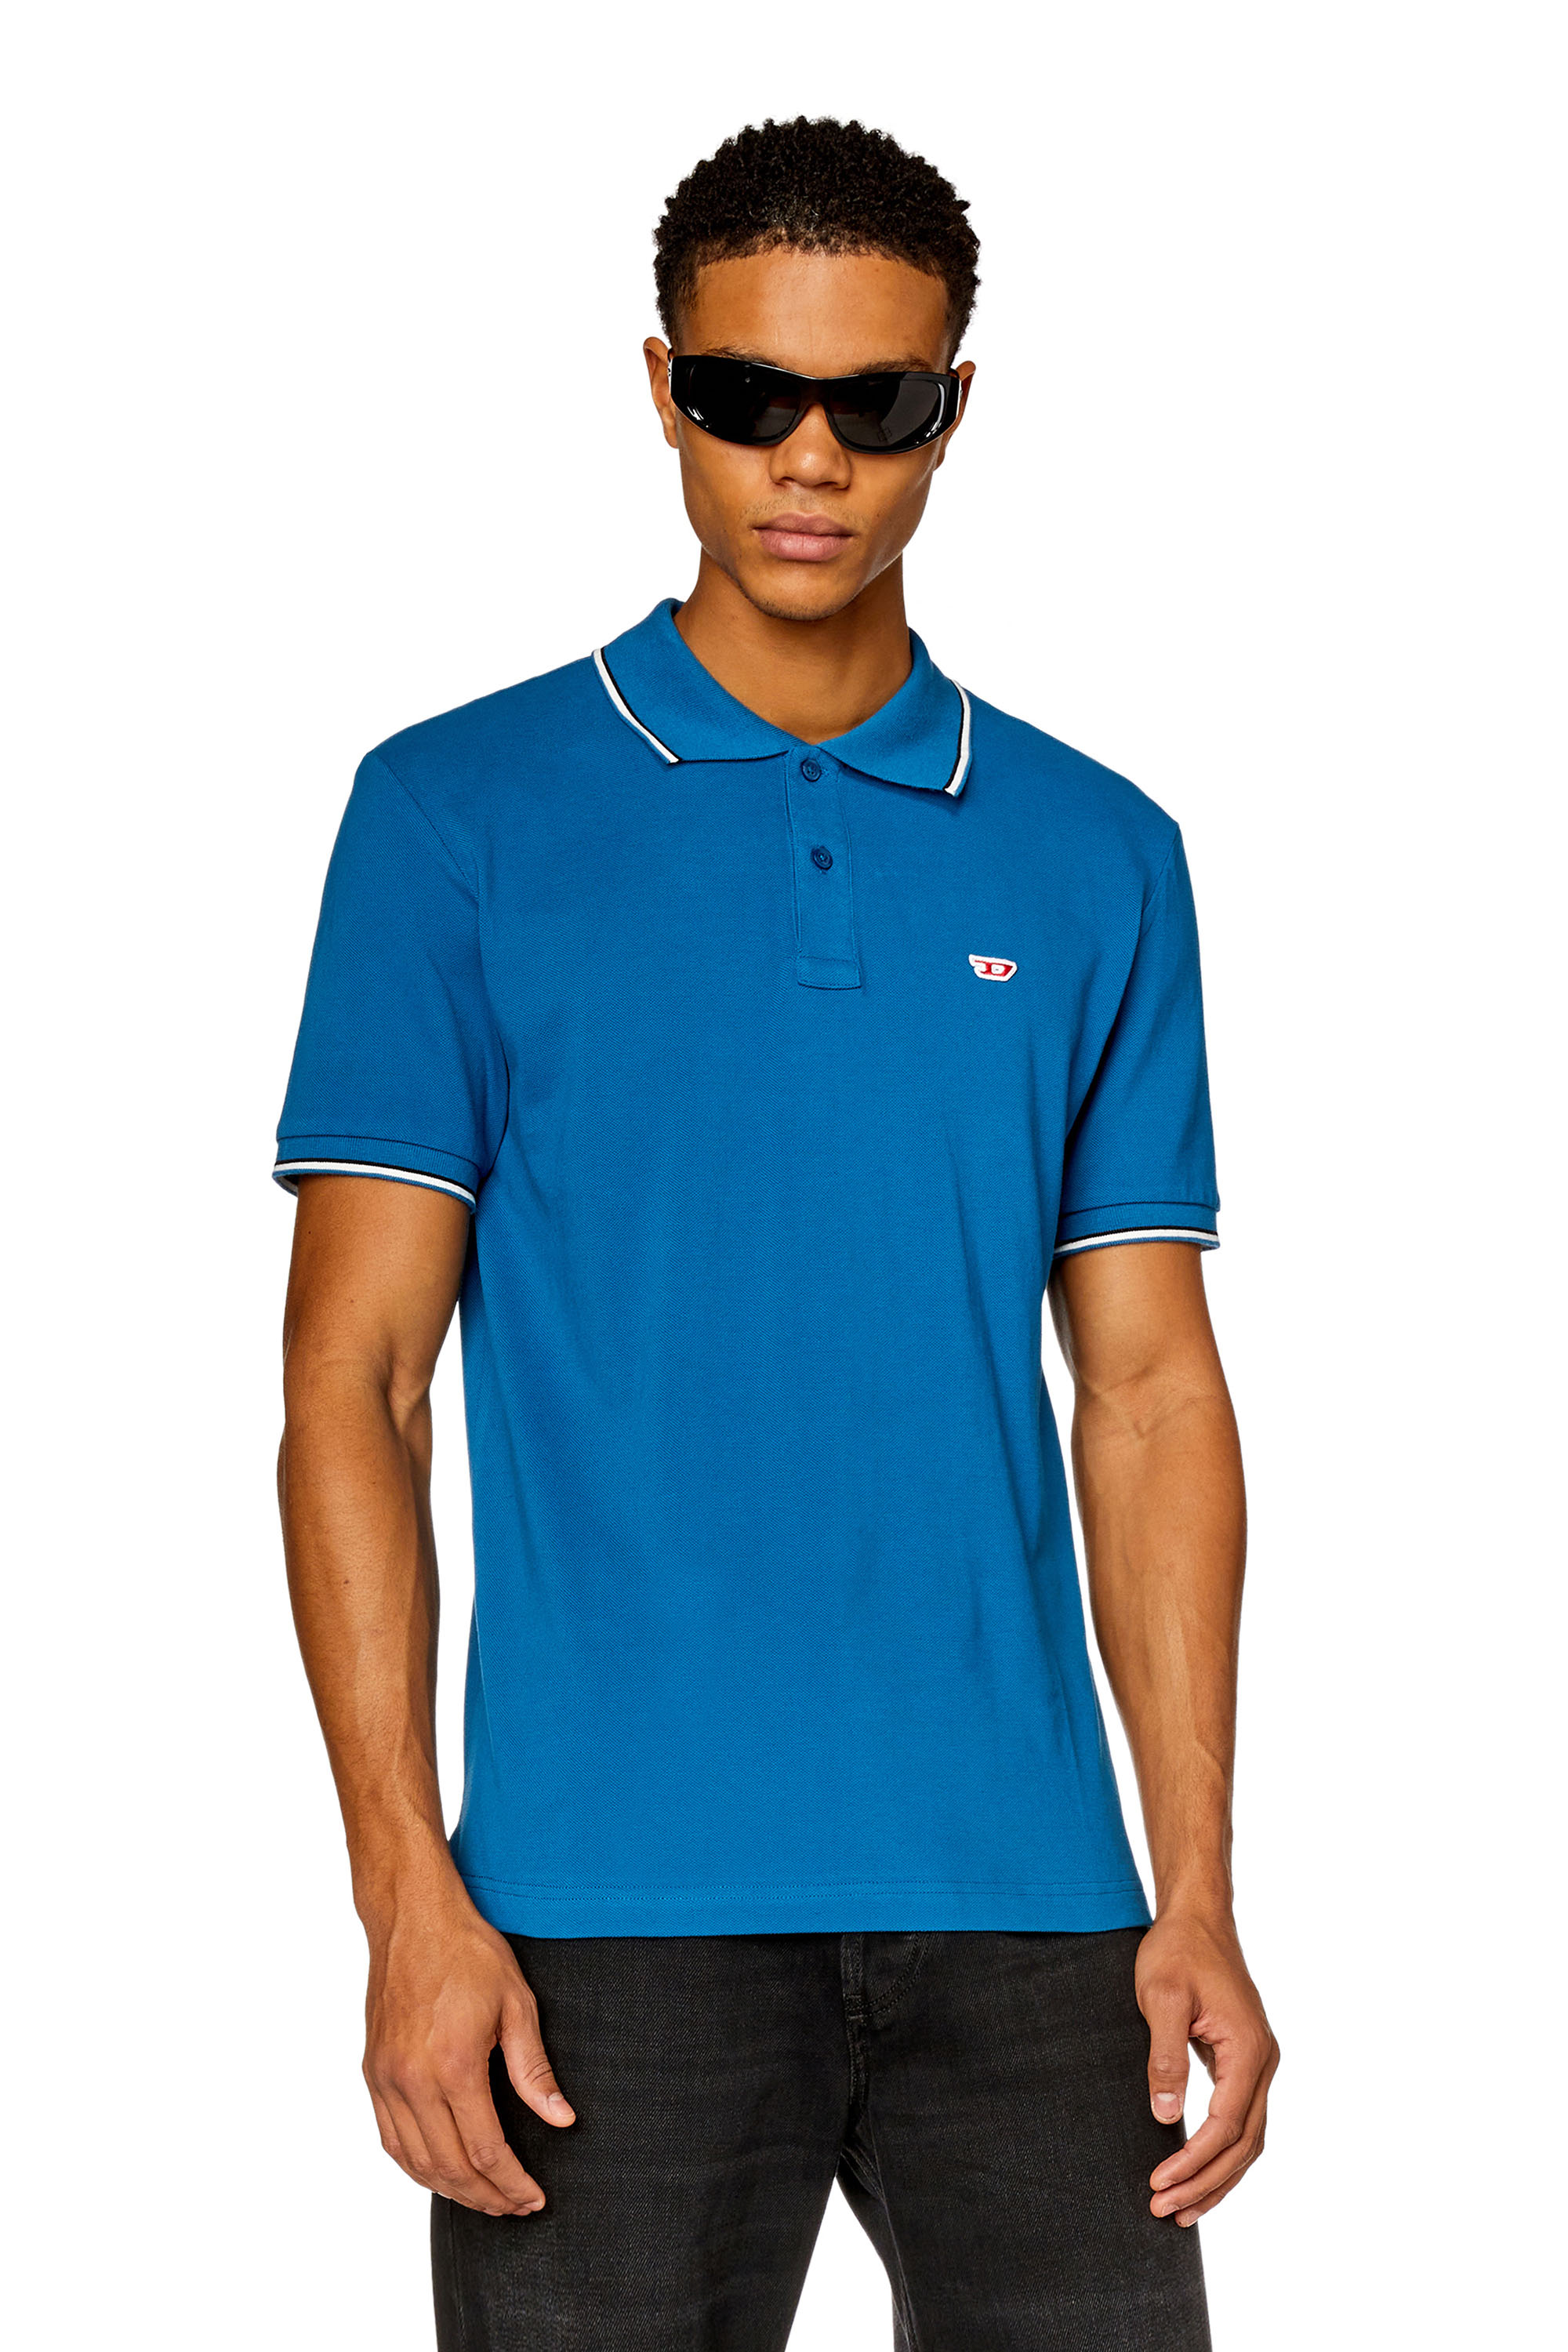 Diesel - Poloshirt mit Streifenkanten - Polohemden - Herren - Blau